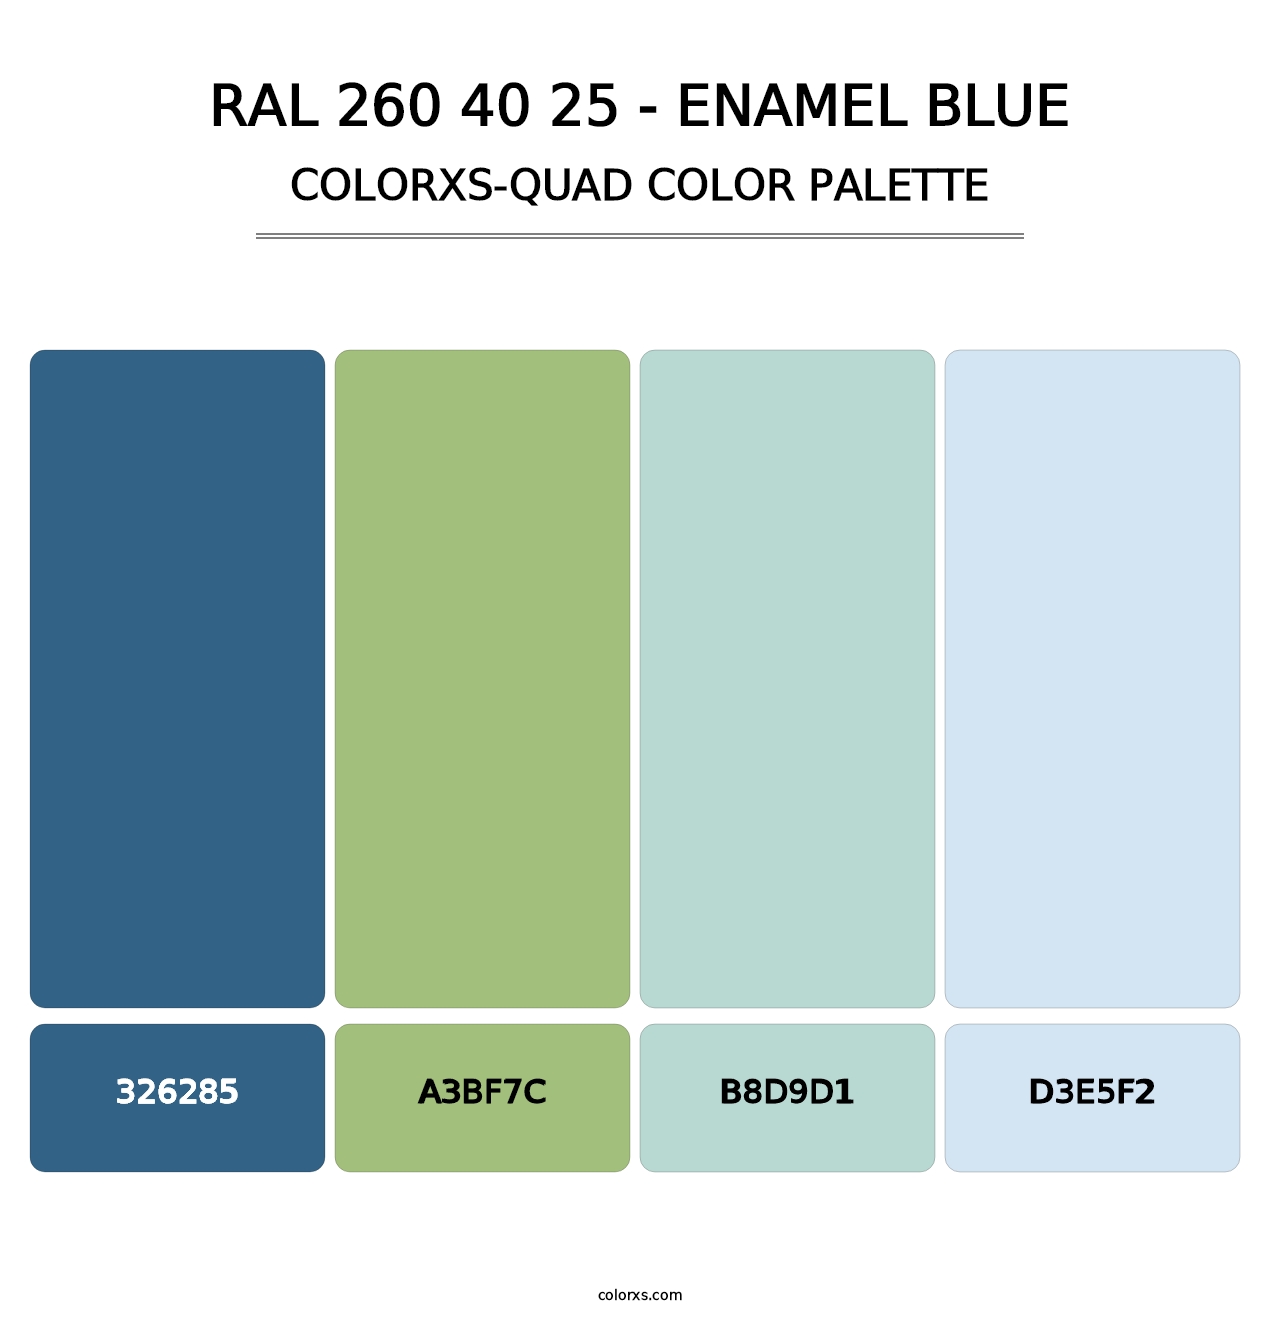 RAL 260 40 25 - Enamel Blue - Colorxs Quad Palette